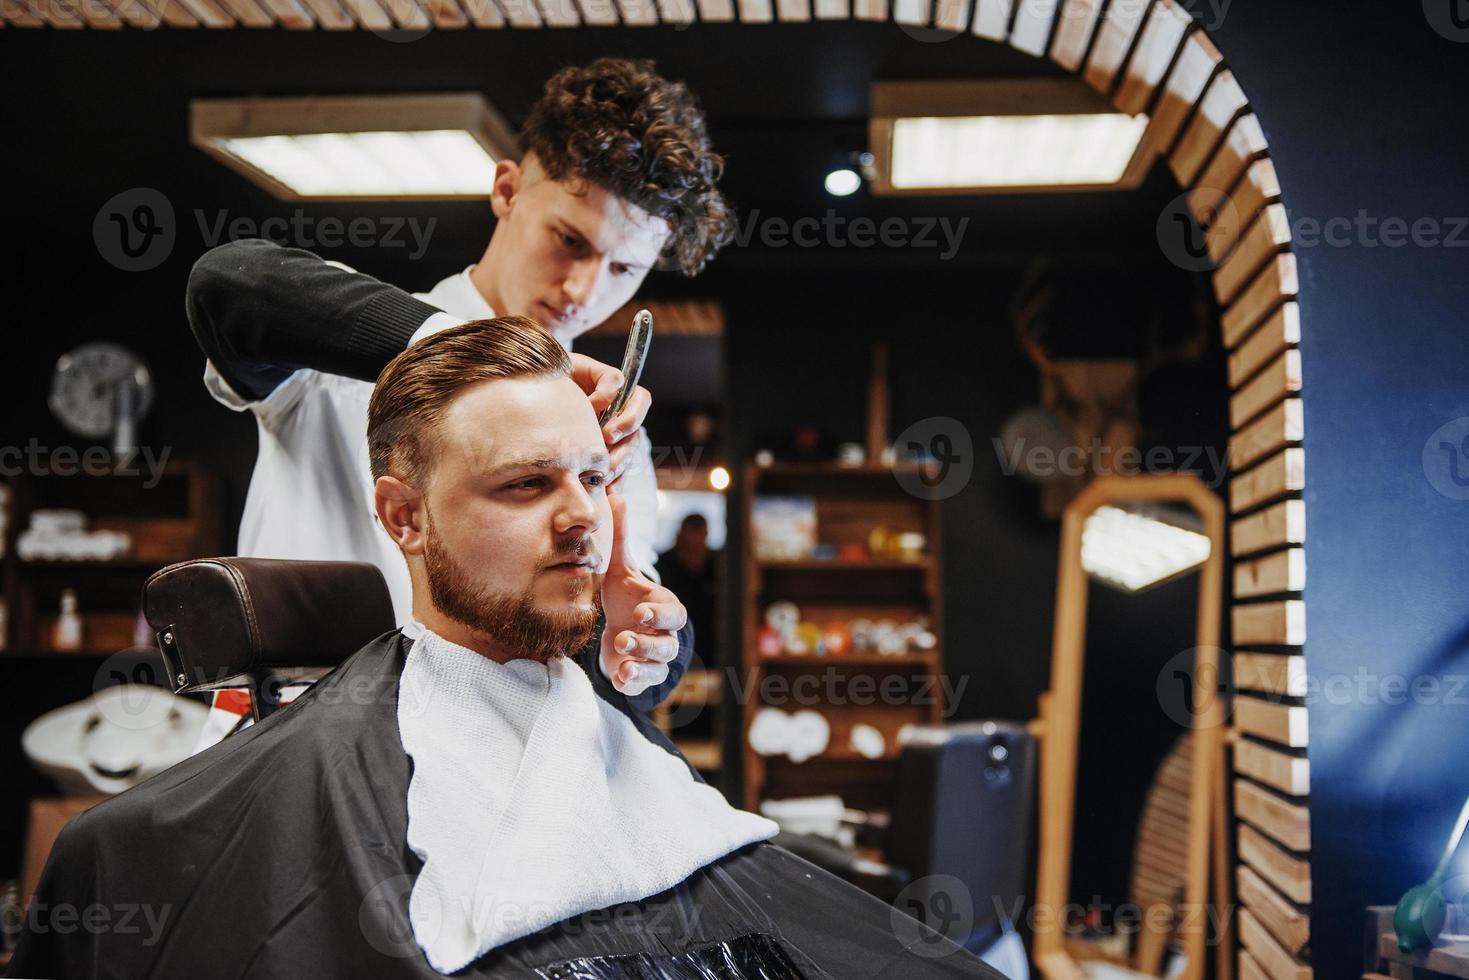 penteado e corte de cabelo masculino em uma barbearia ou salão de cabeleireiro. foto